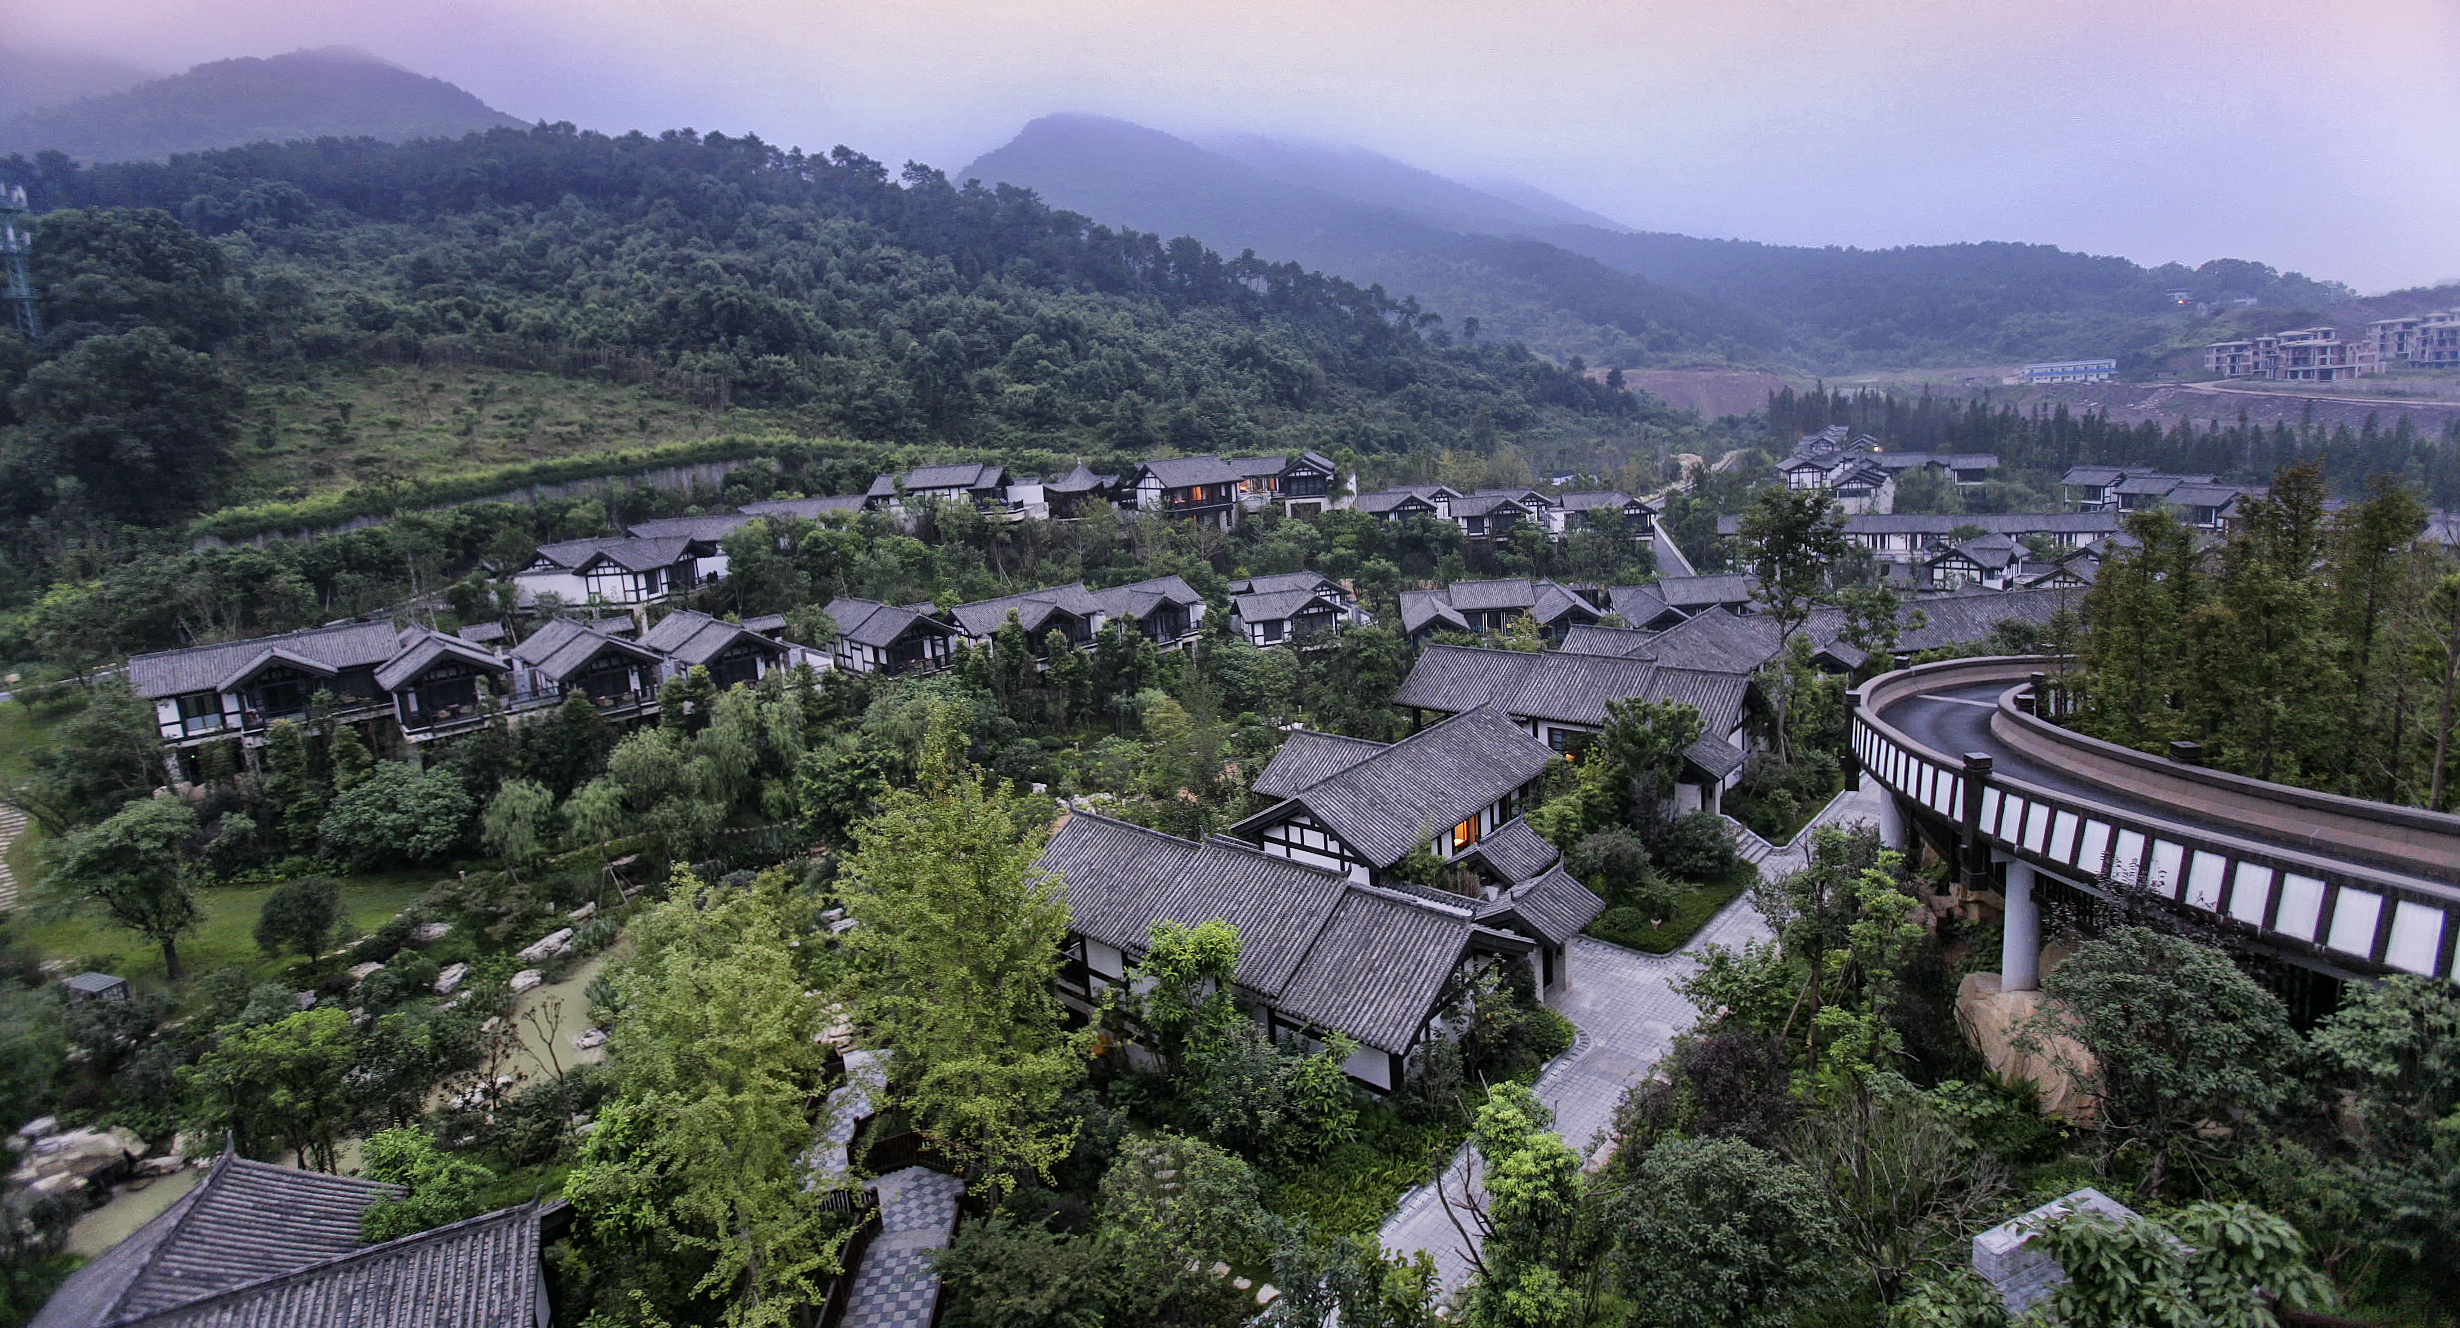 山自然风景区,离主城及机场驾车大概四十分钟,重庆北碚悦榕庄坐落于此